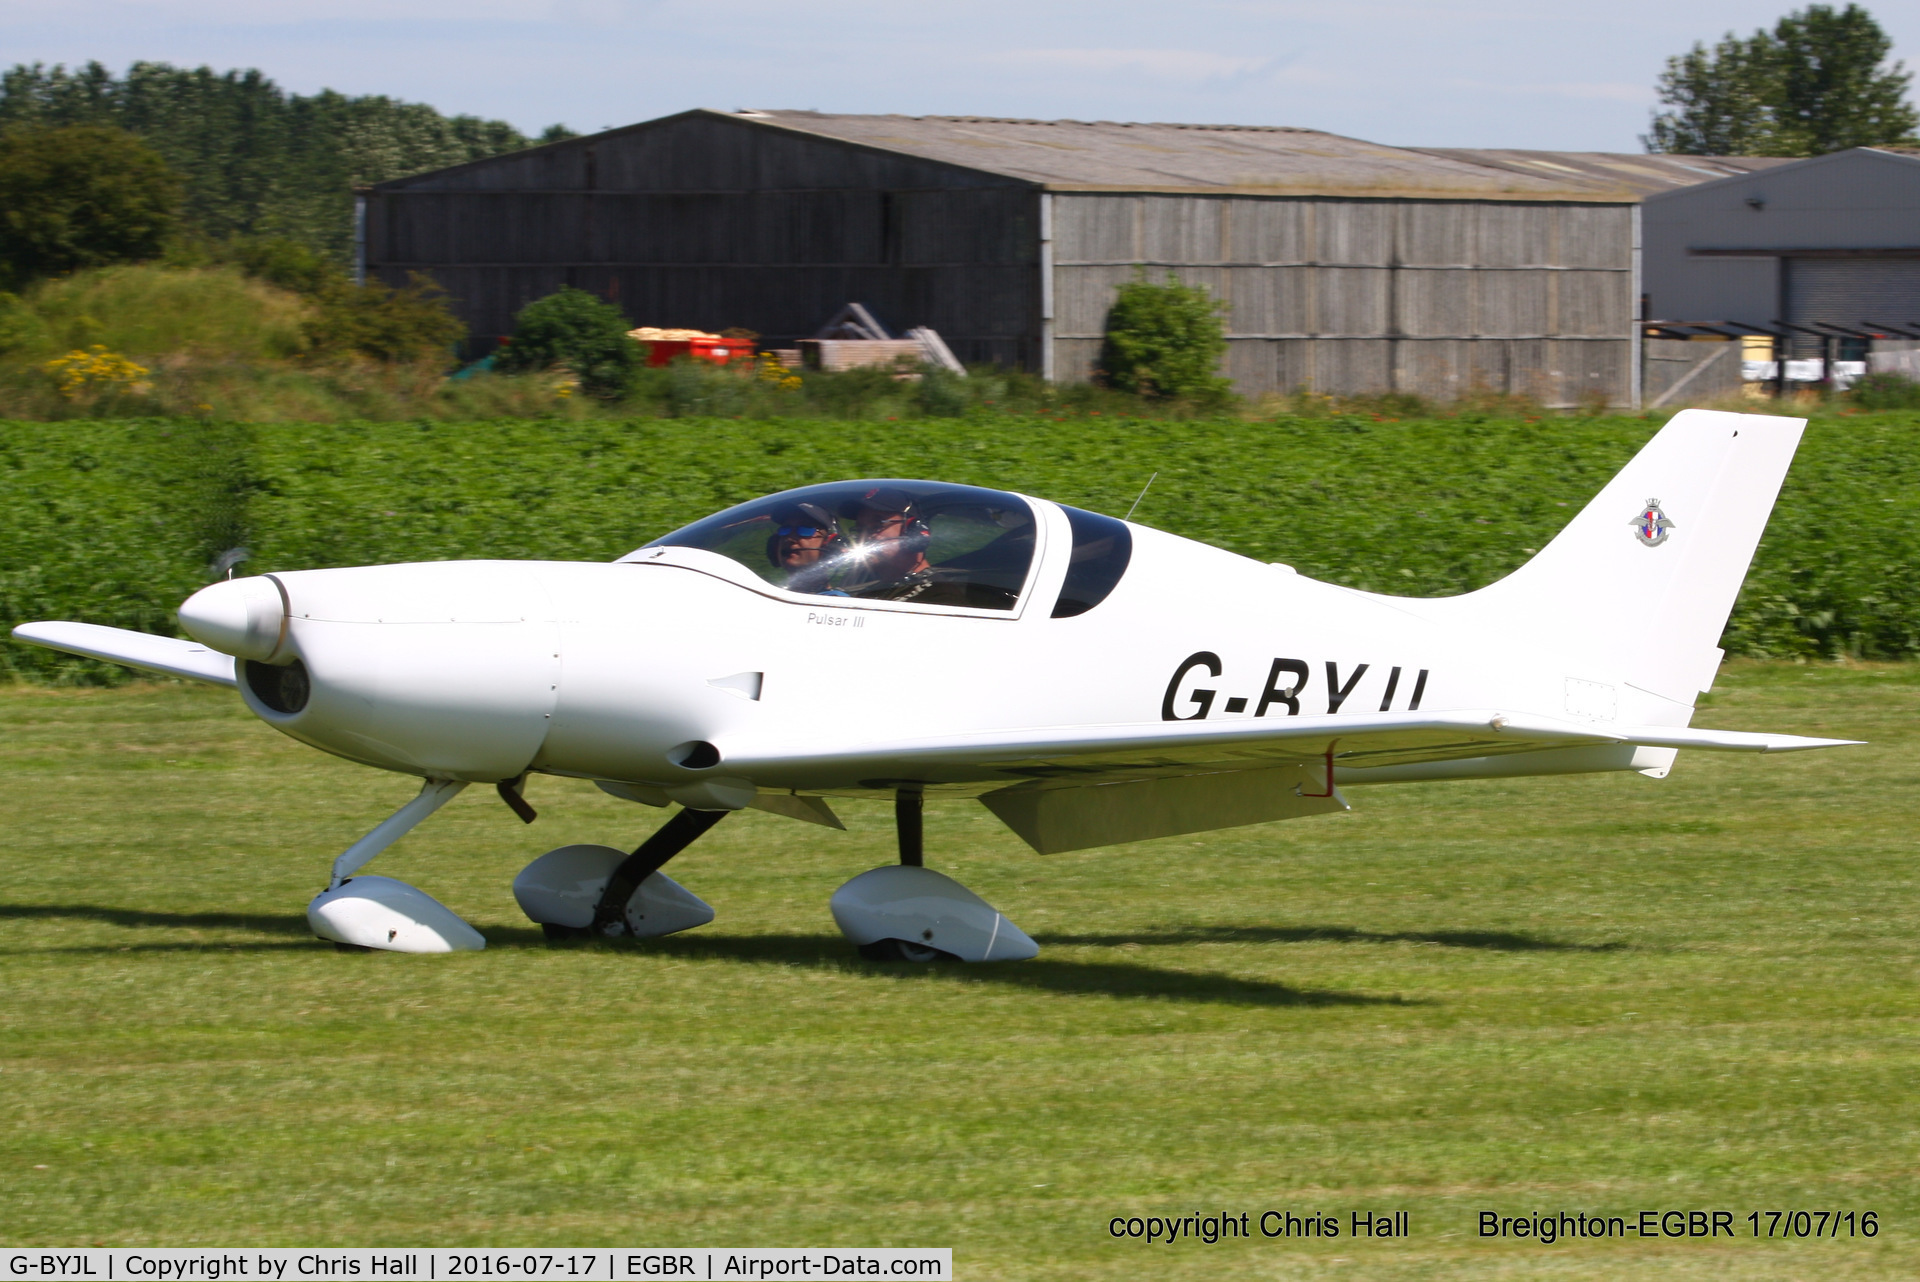 G-BYJL, 1999 Aero Designs Pulsar lll C/N PFA 202-13311, at Breighton's Summer Fly-in